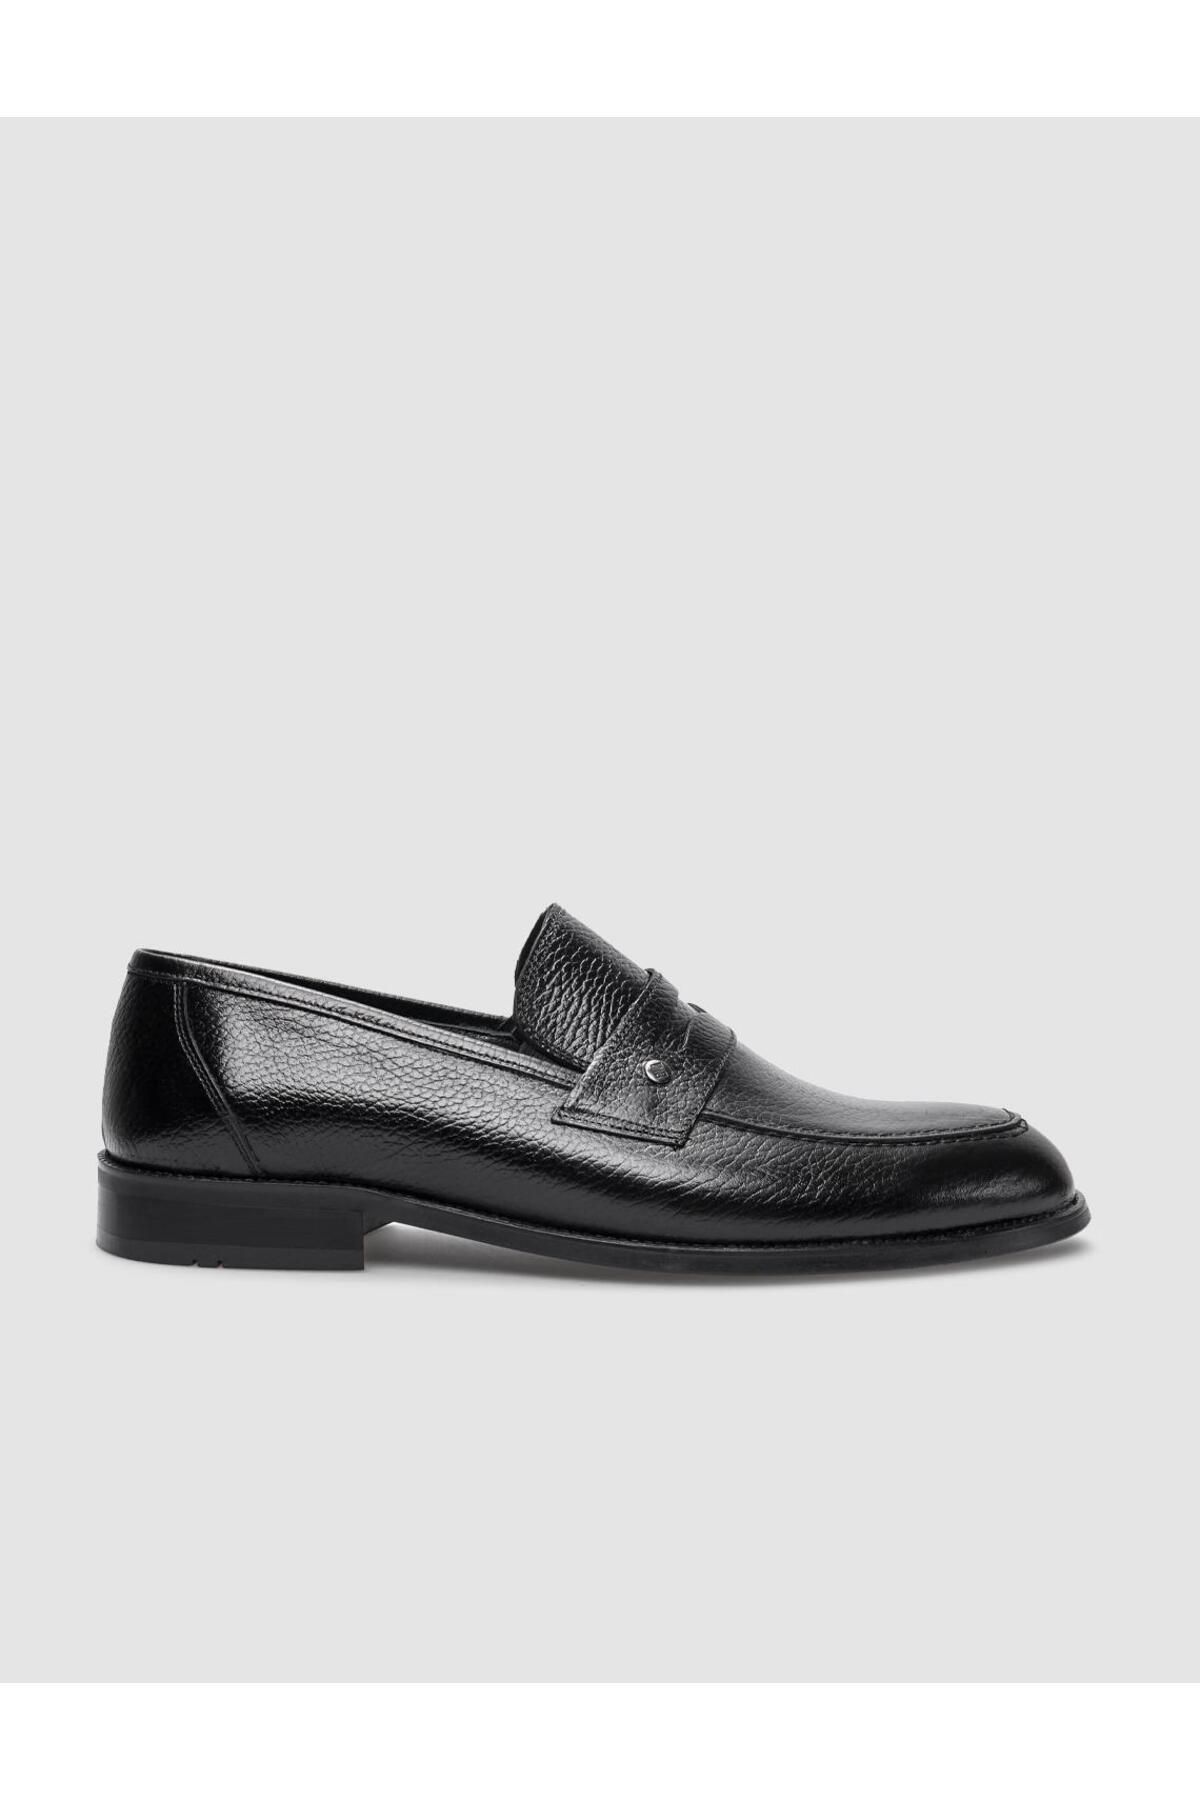 Cabani %100 Hakiki Deri Siyah Erkek Klasik Ayakkabı